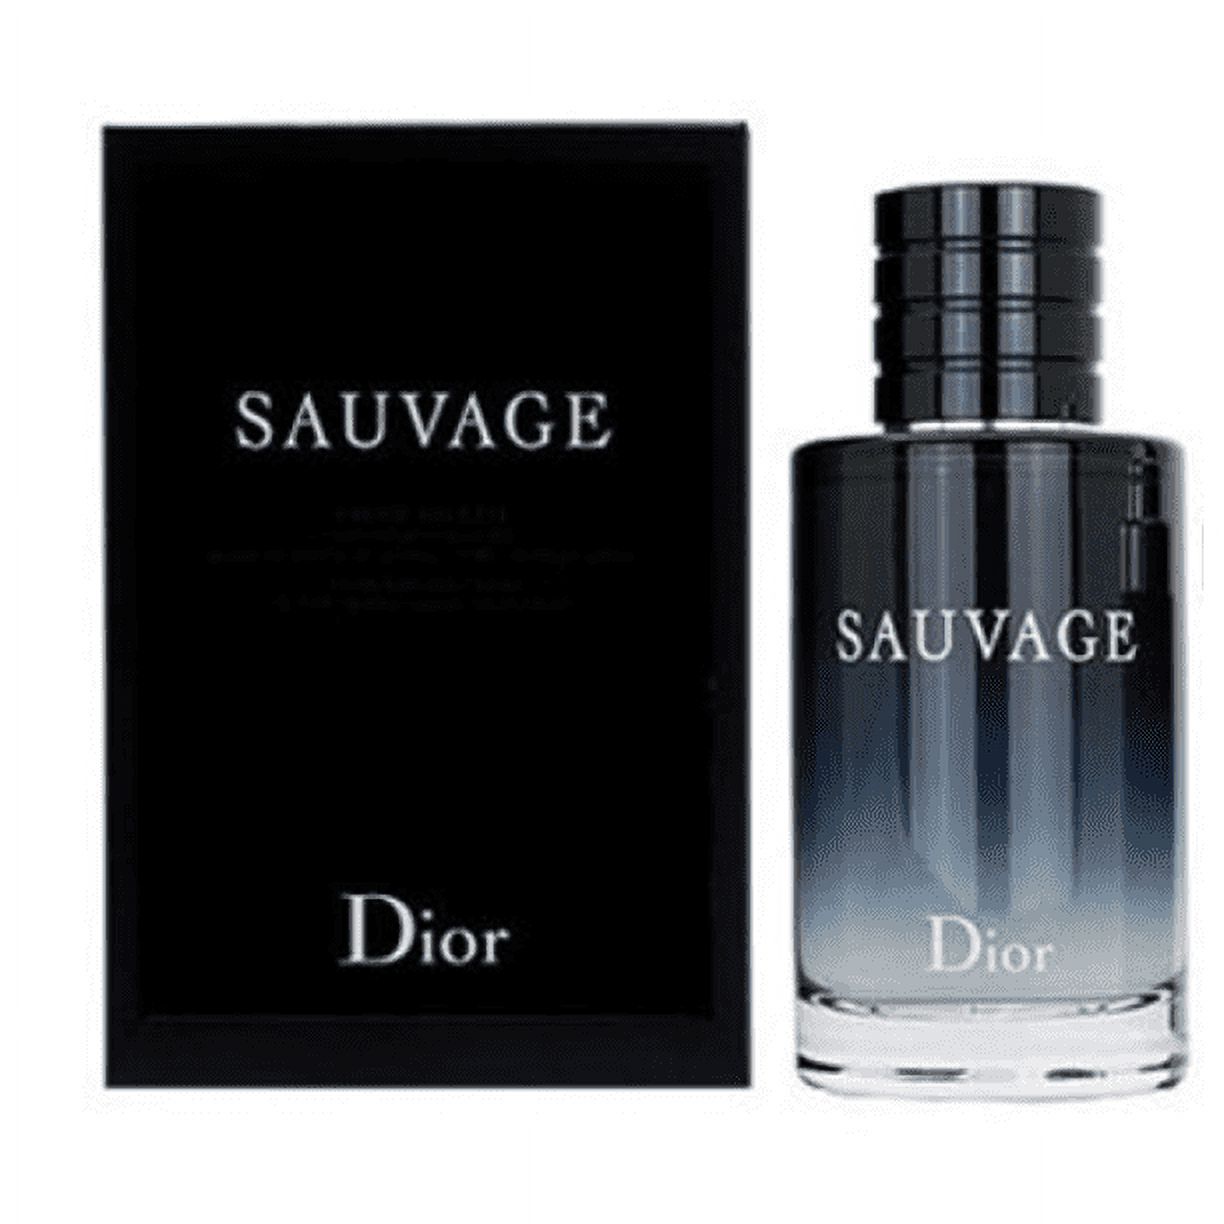 Dior Sauvage Eau De Toilette Spray, Cologne for Men, 3.4 Oz - image 3 of 3